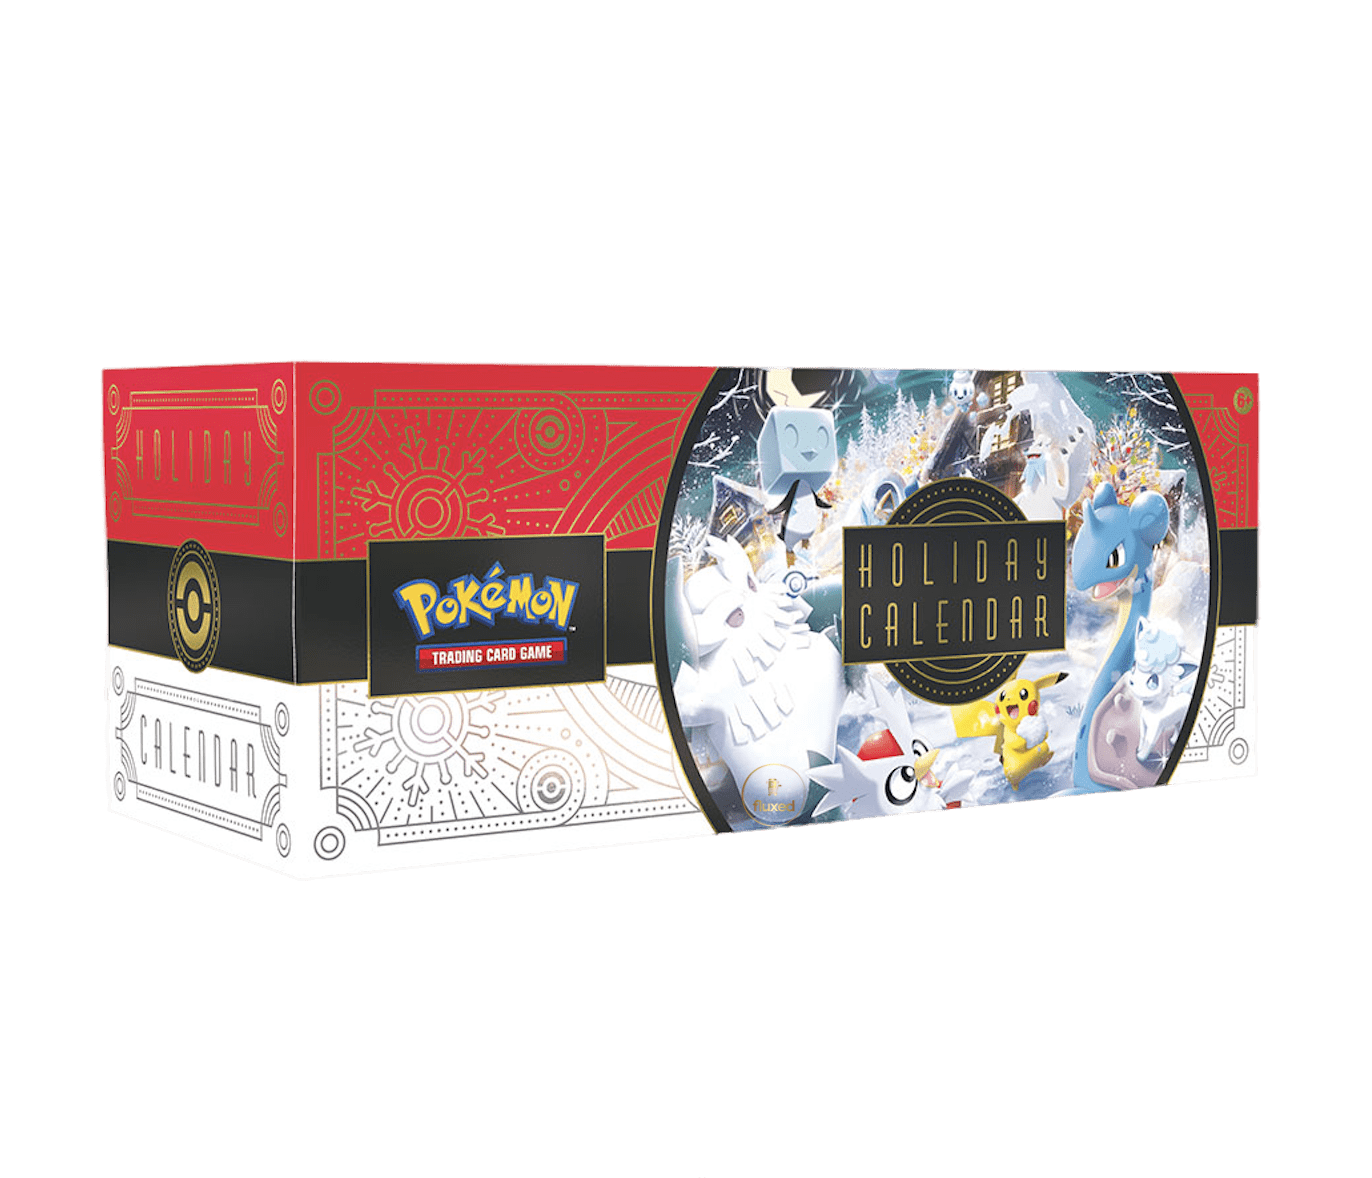 Pokémon Holiday Calendar - Nur CHF 59.90! Jetzt kaufen auf fluxed.ch